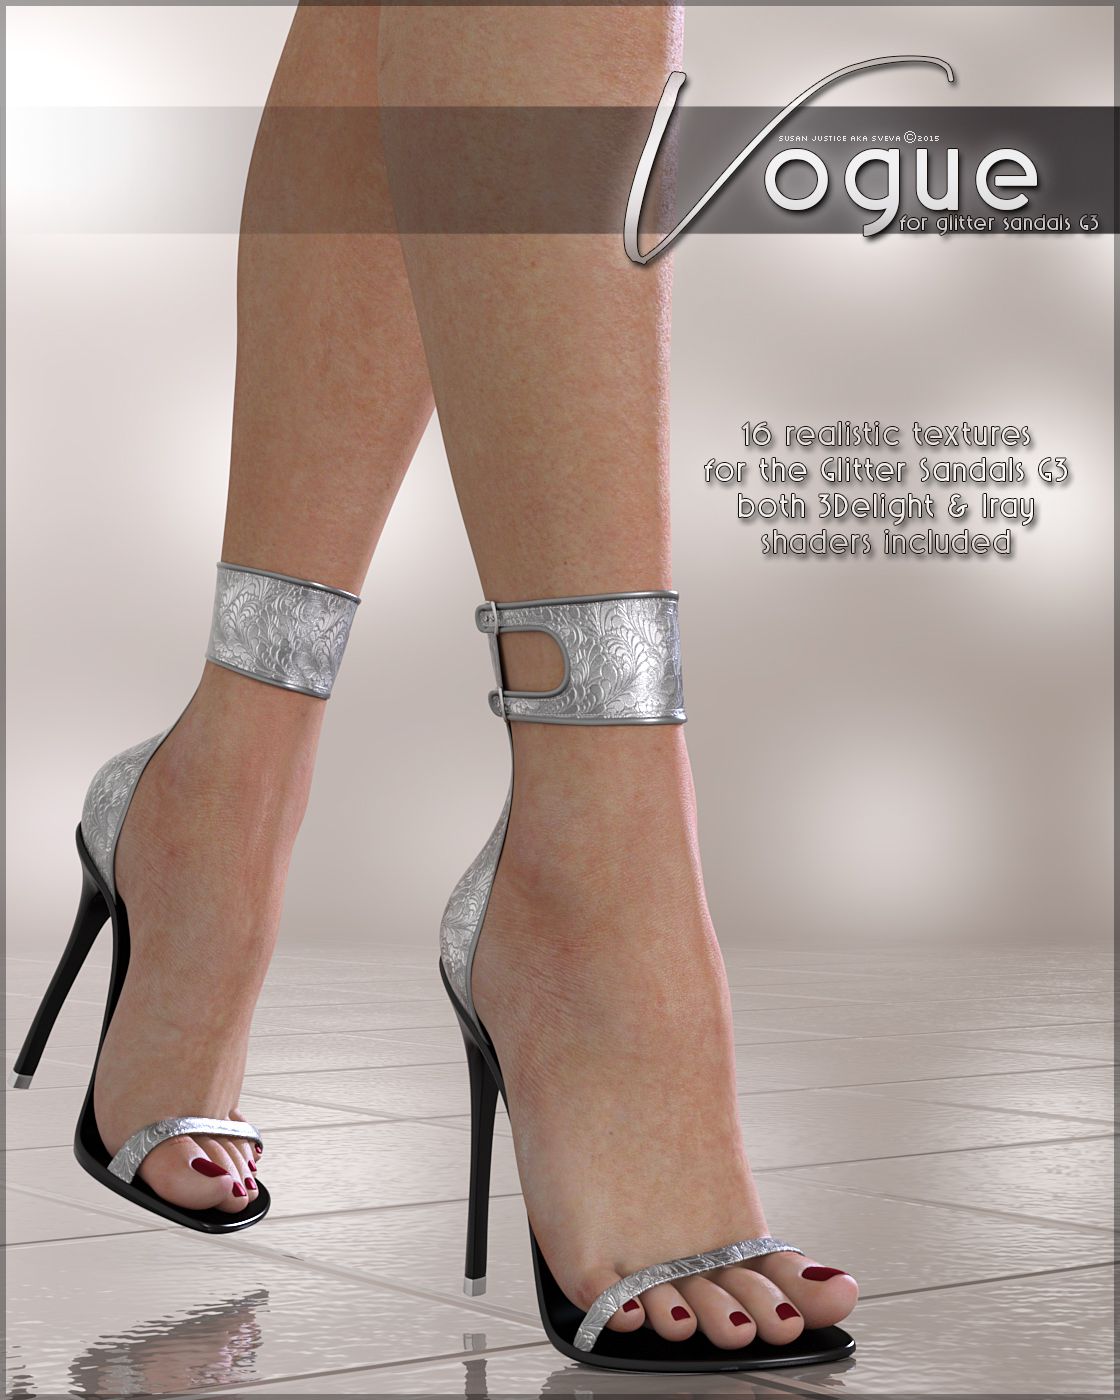 Vogue for Glitter Sandals_DAZ3DDL